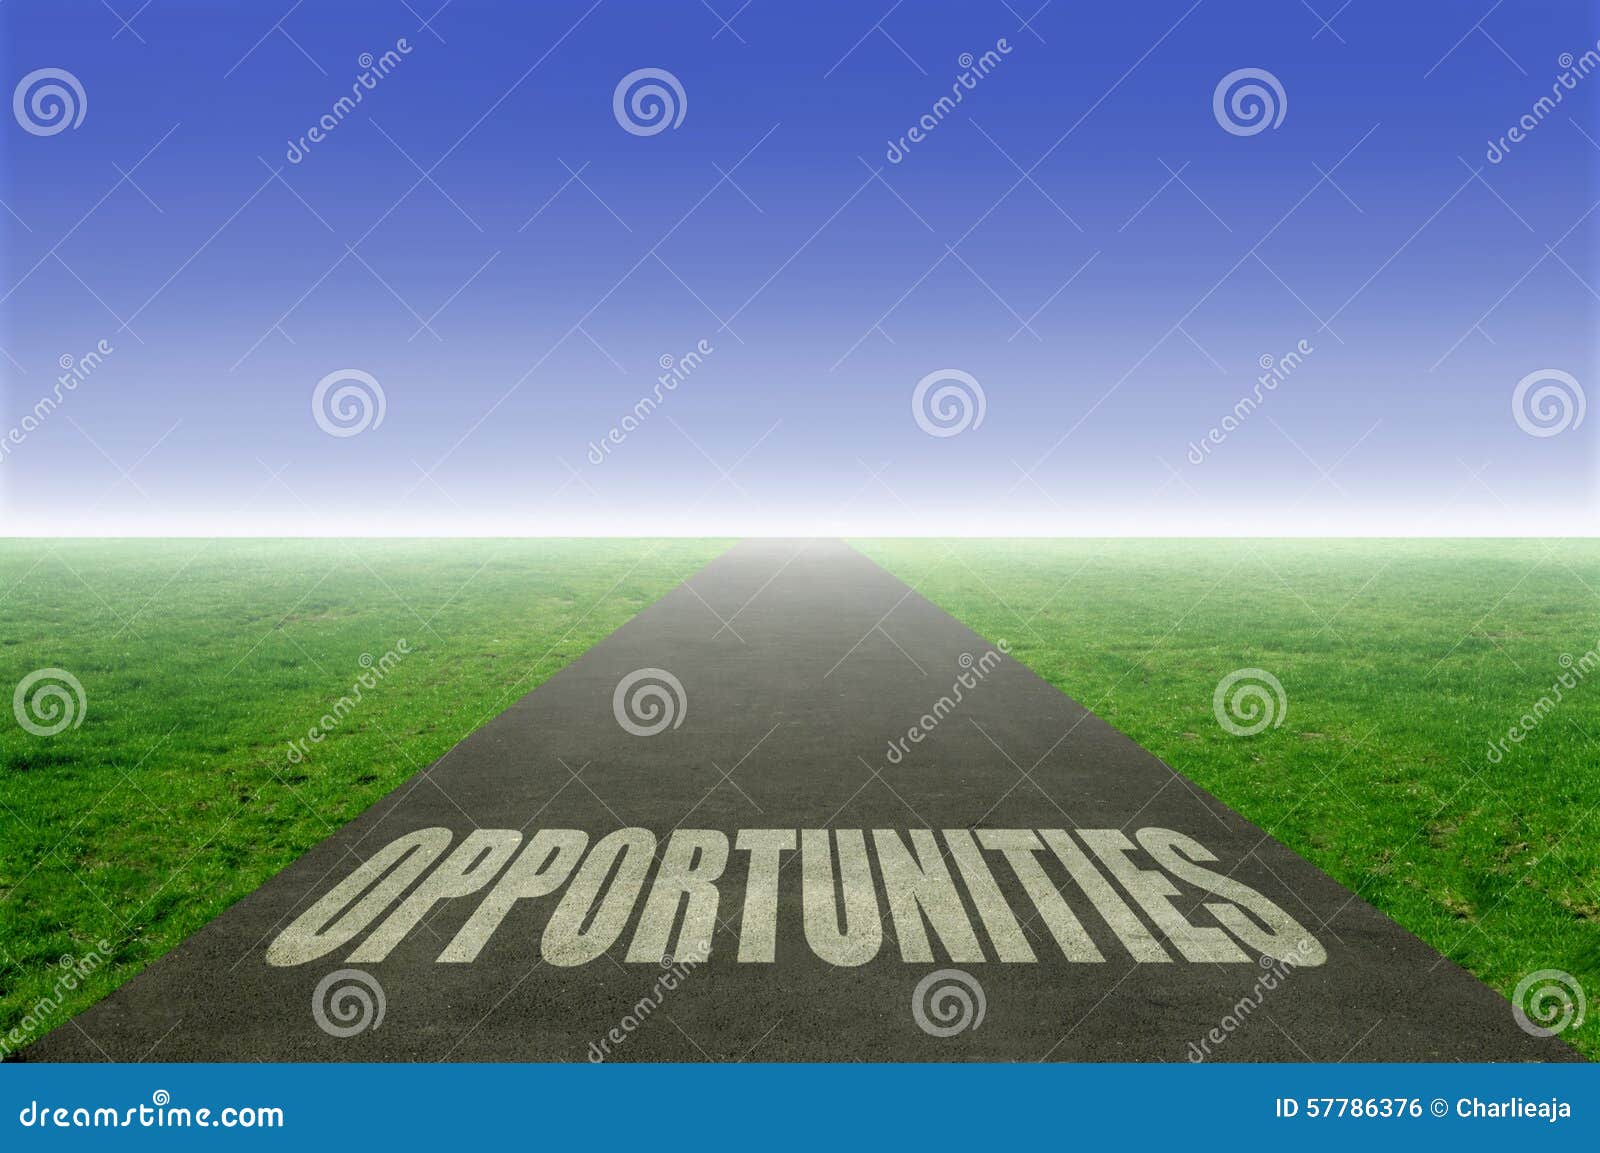 opportunities